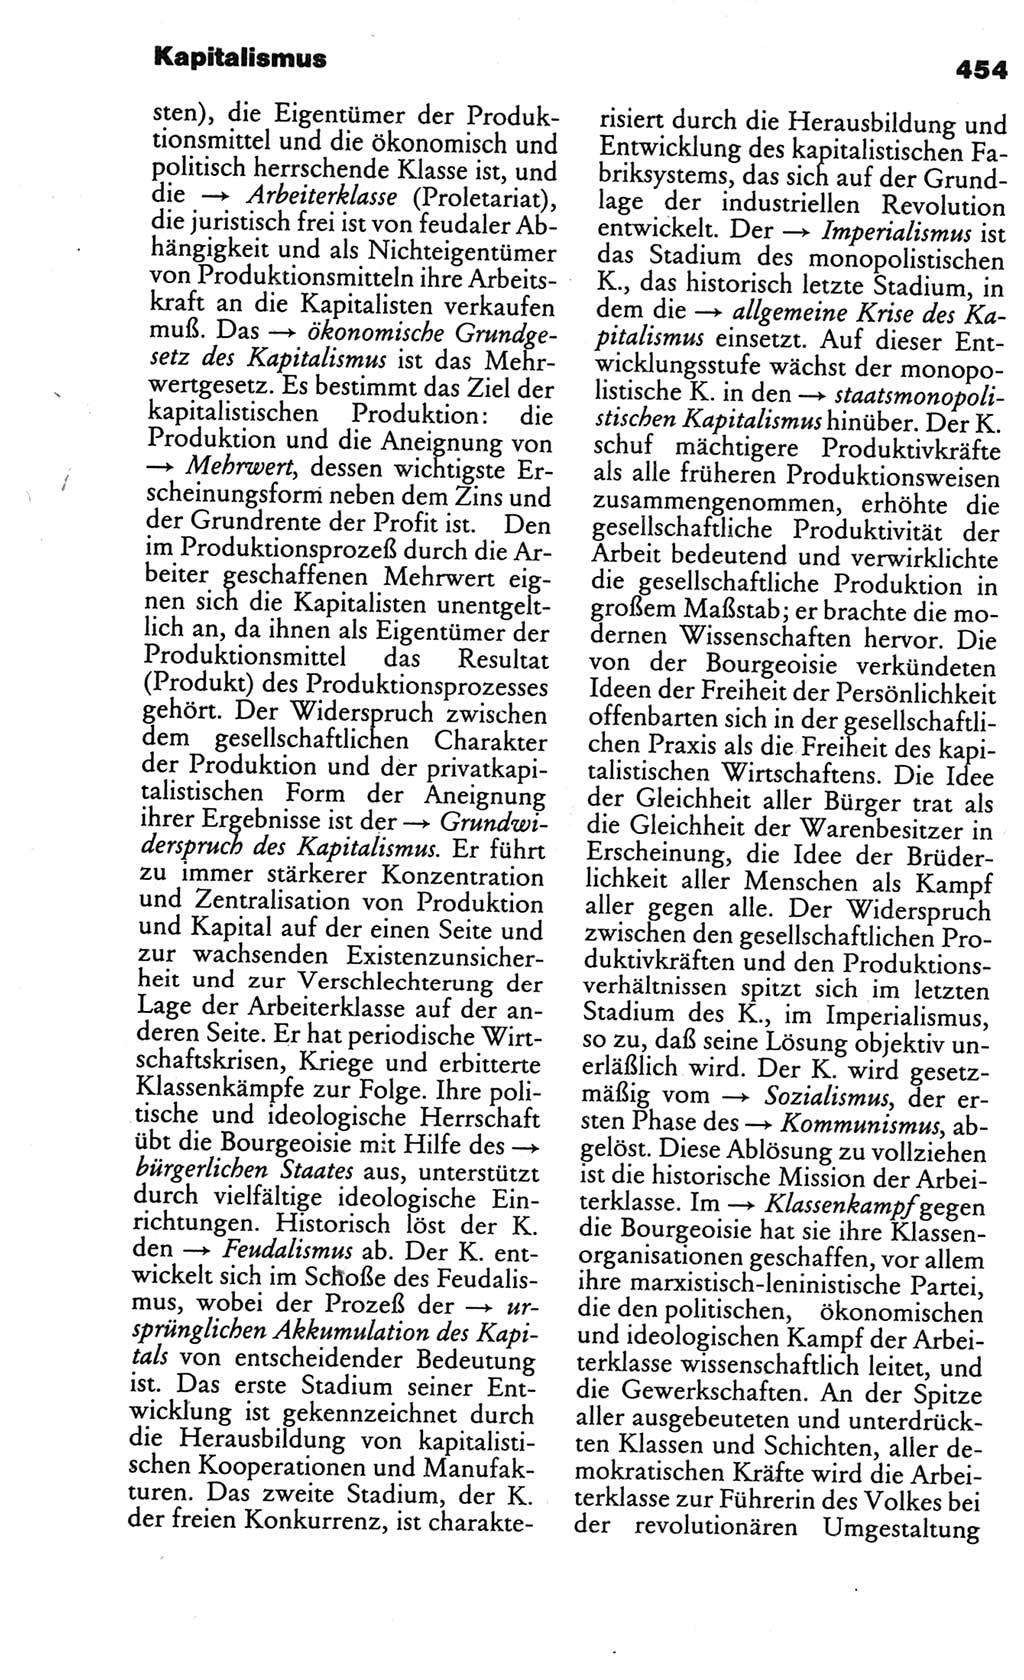 Kleines politisches Wörterbuch [Deutsche Demokratische Republik (DDR)] 1986, Seite 454 (Kl. pol. Wb. DDR 1986, S. 454)